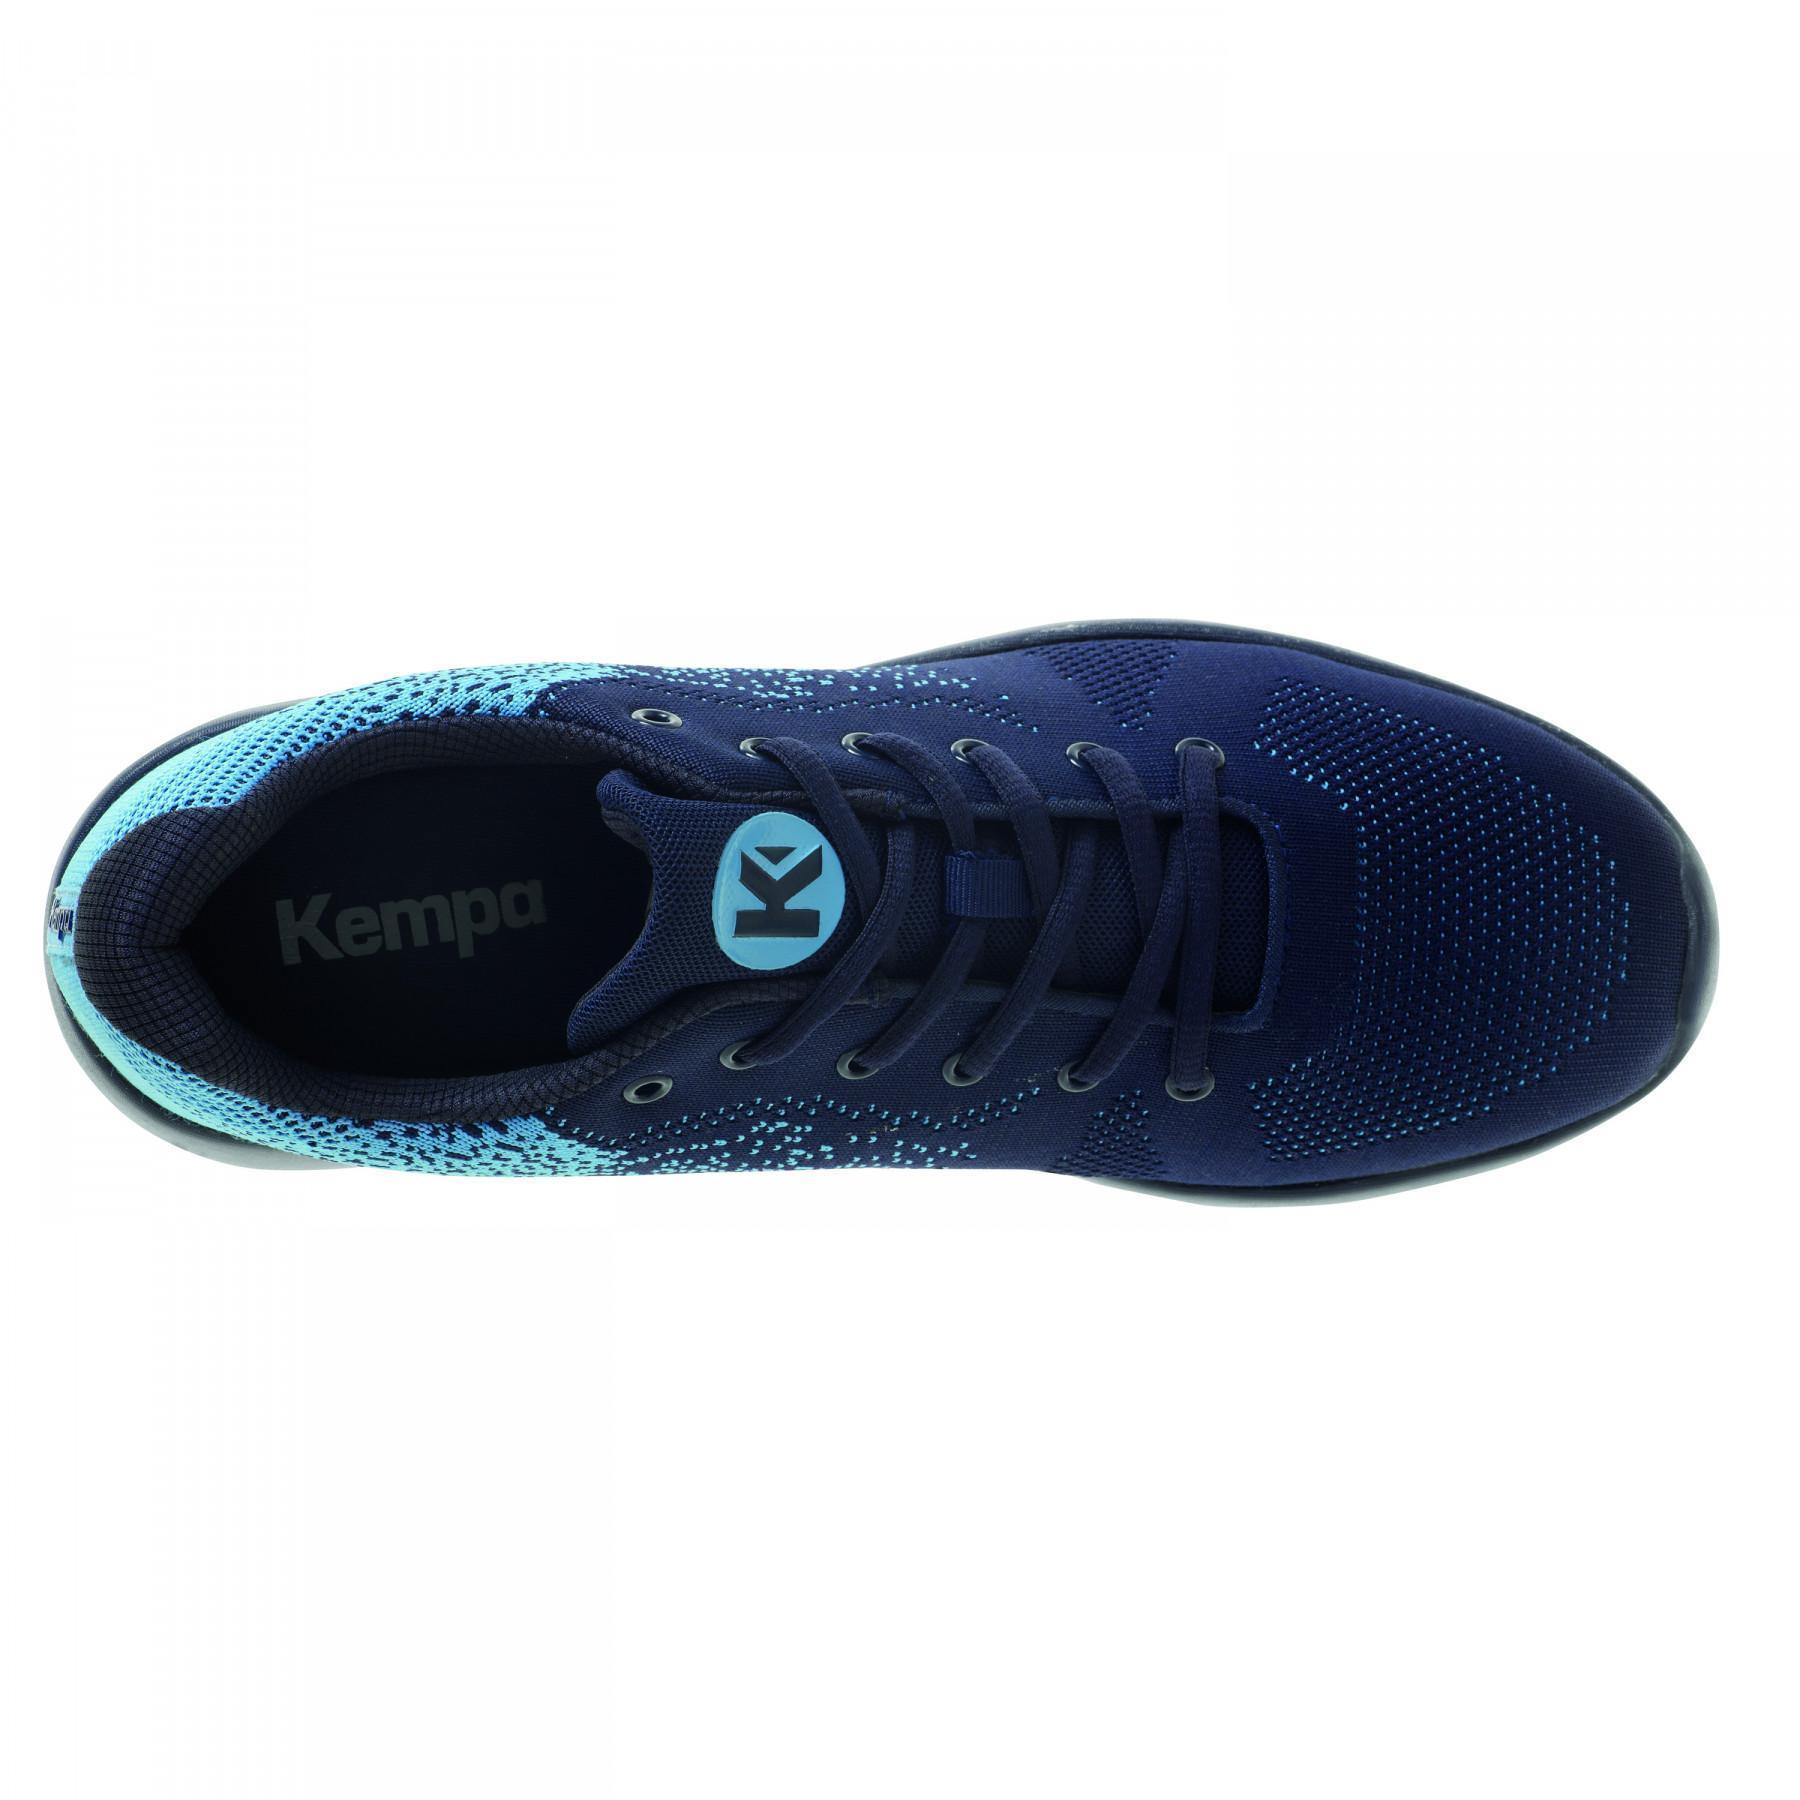 Shoes Kempa K-Float